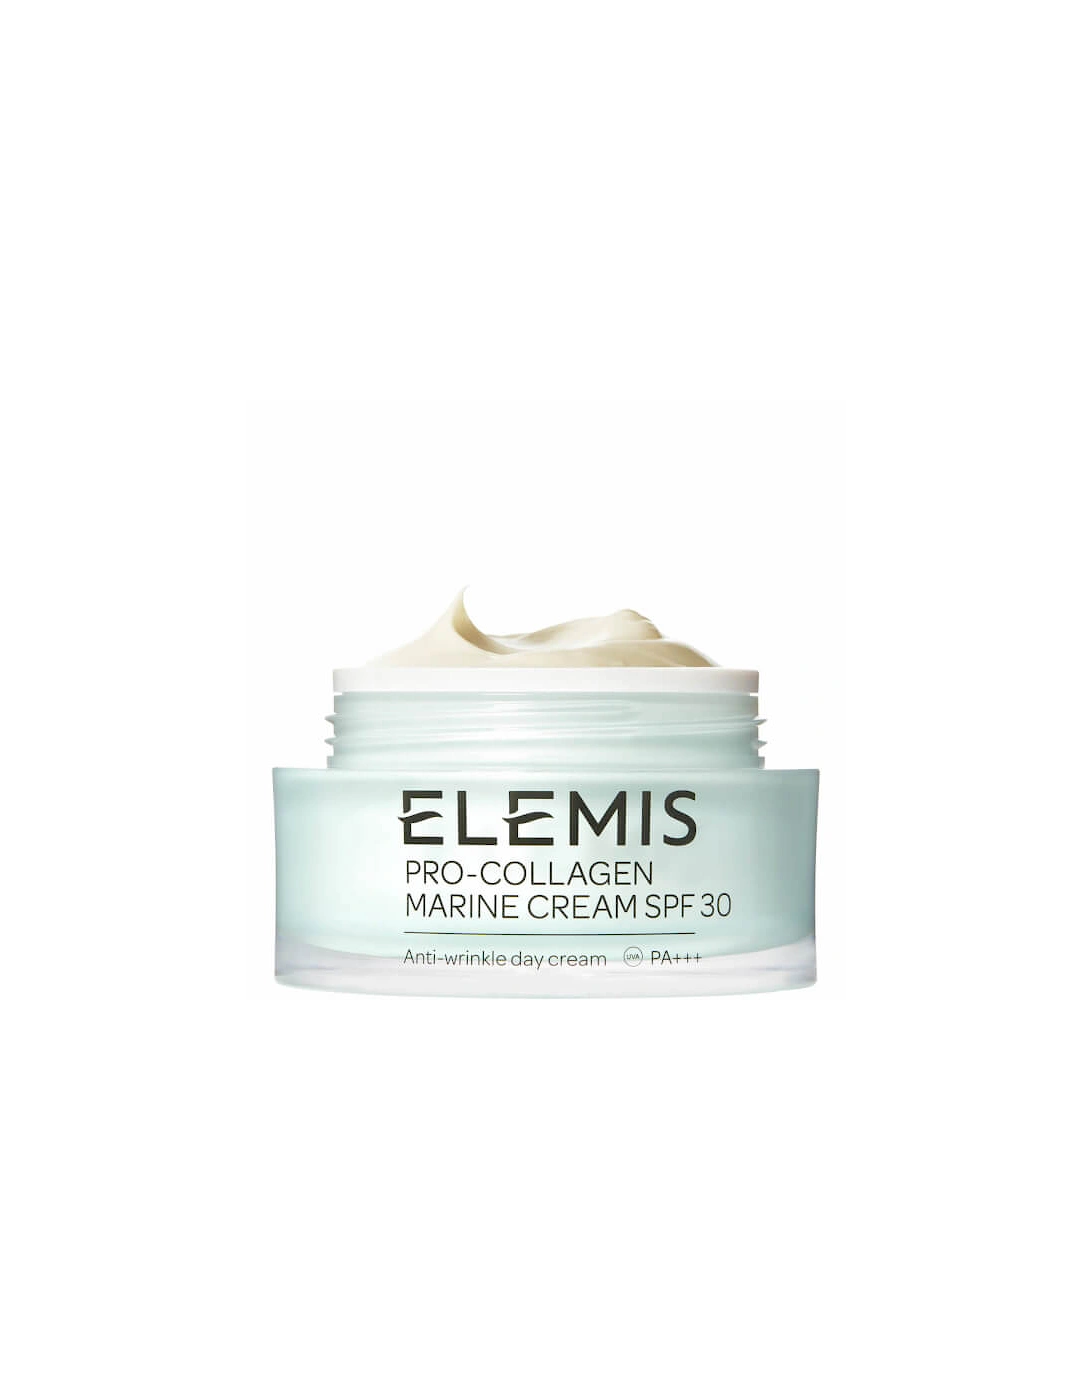 Pro-Collagen Marine Cream SPF 30 - Elemis, 2 of 1